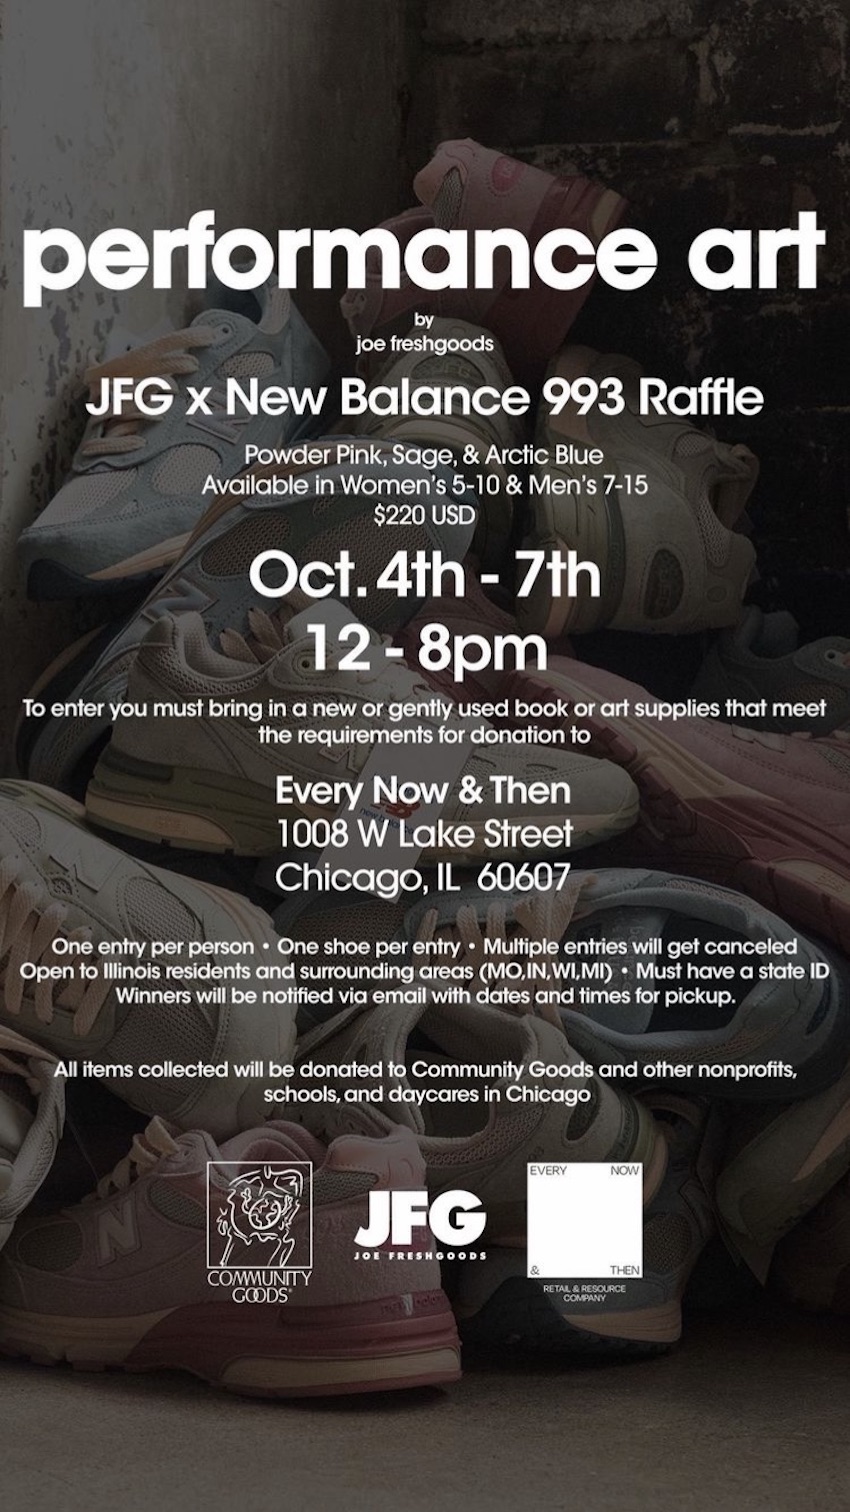 Joe Freshgoods New Balance 993 Performance Art Where to Buy